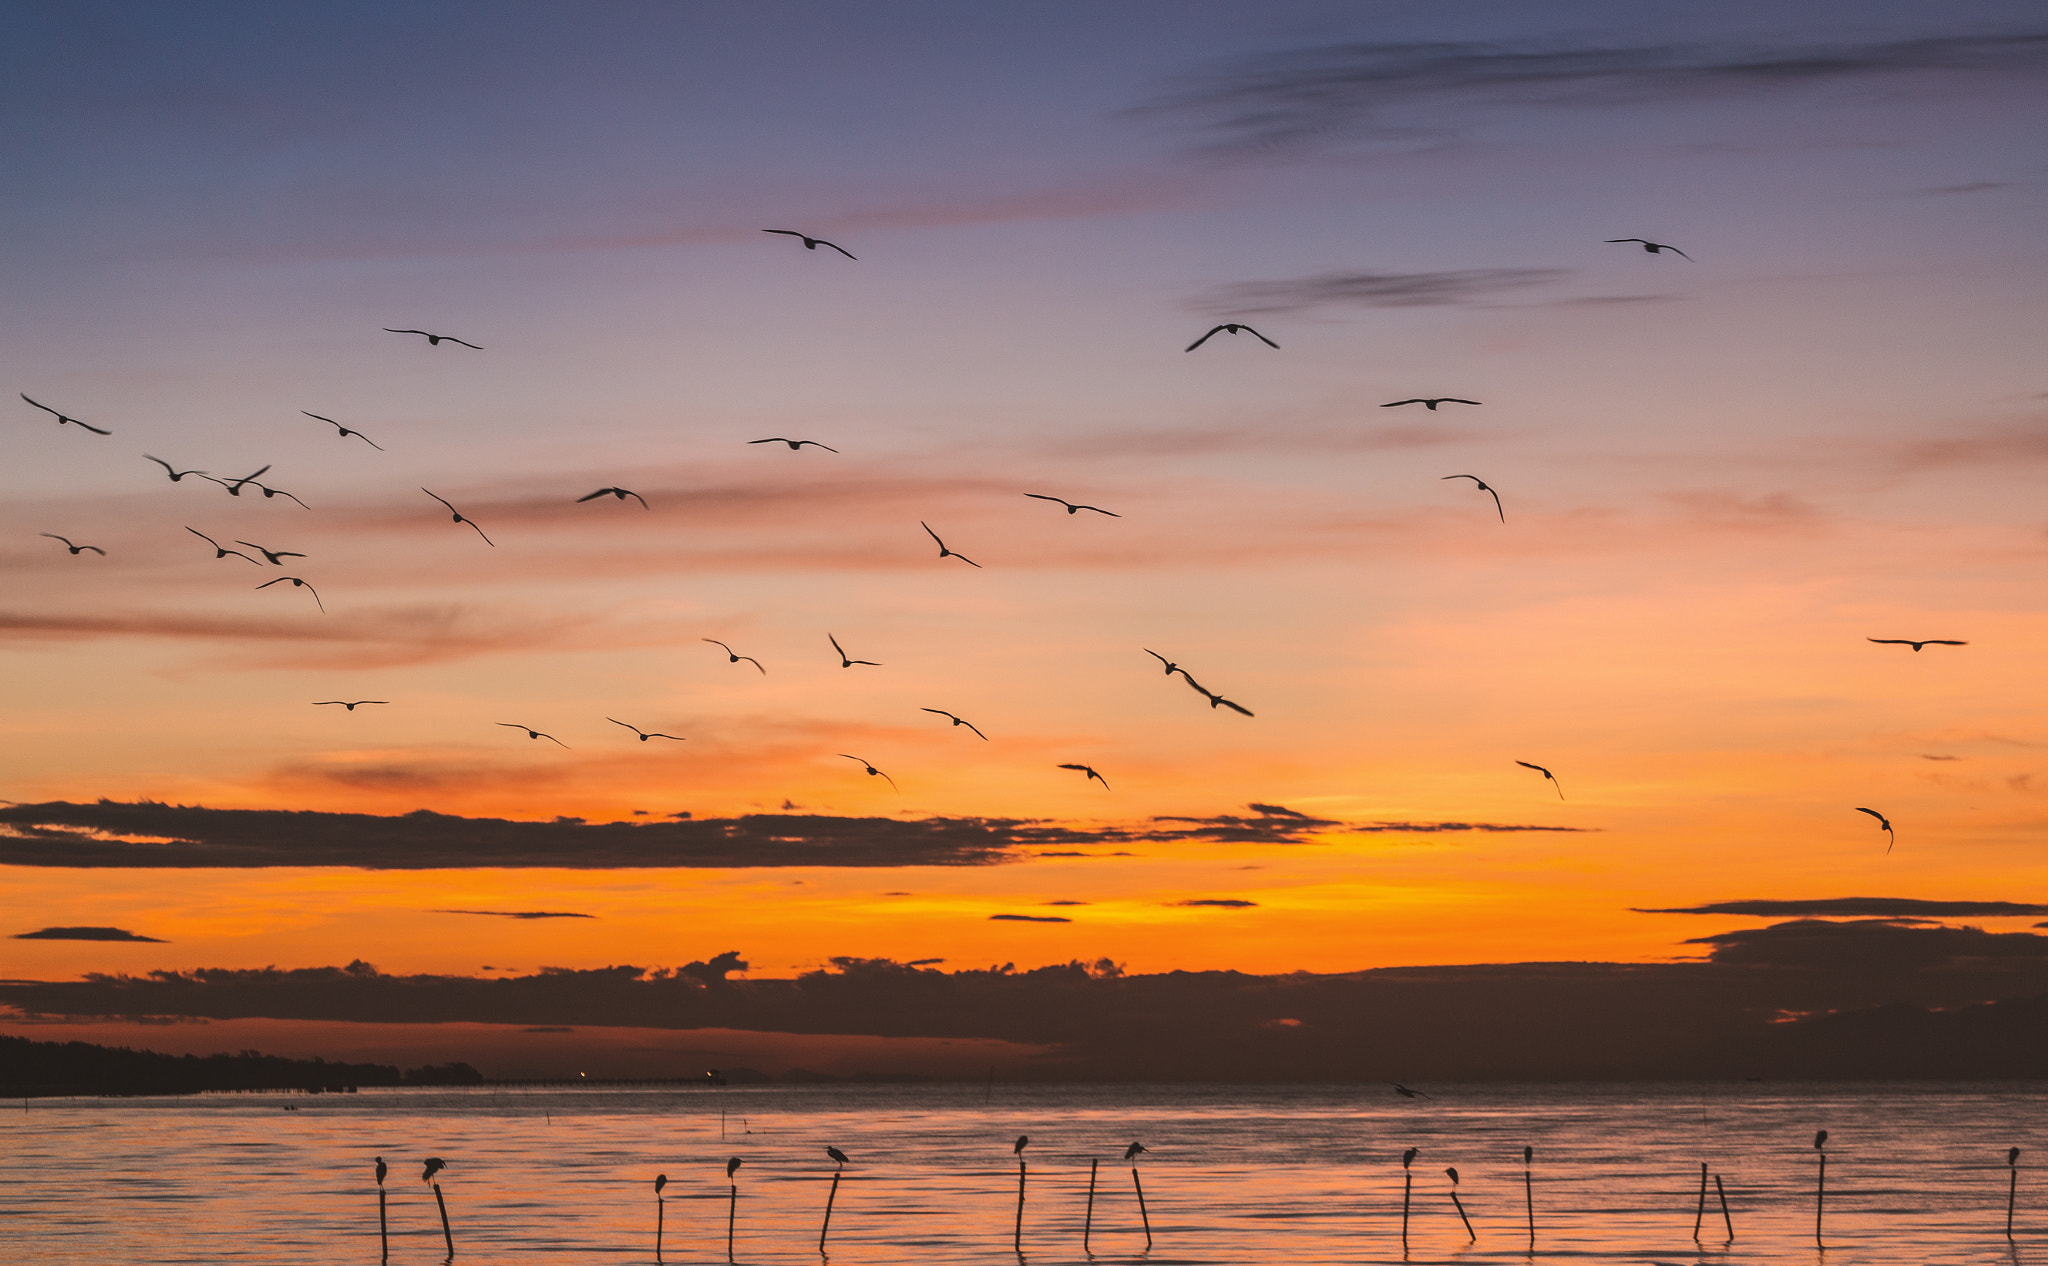 Morning scene of flying seagulls